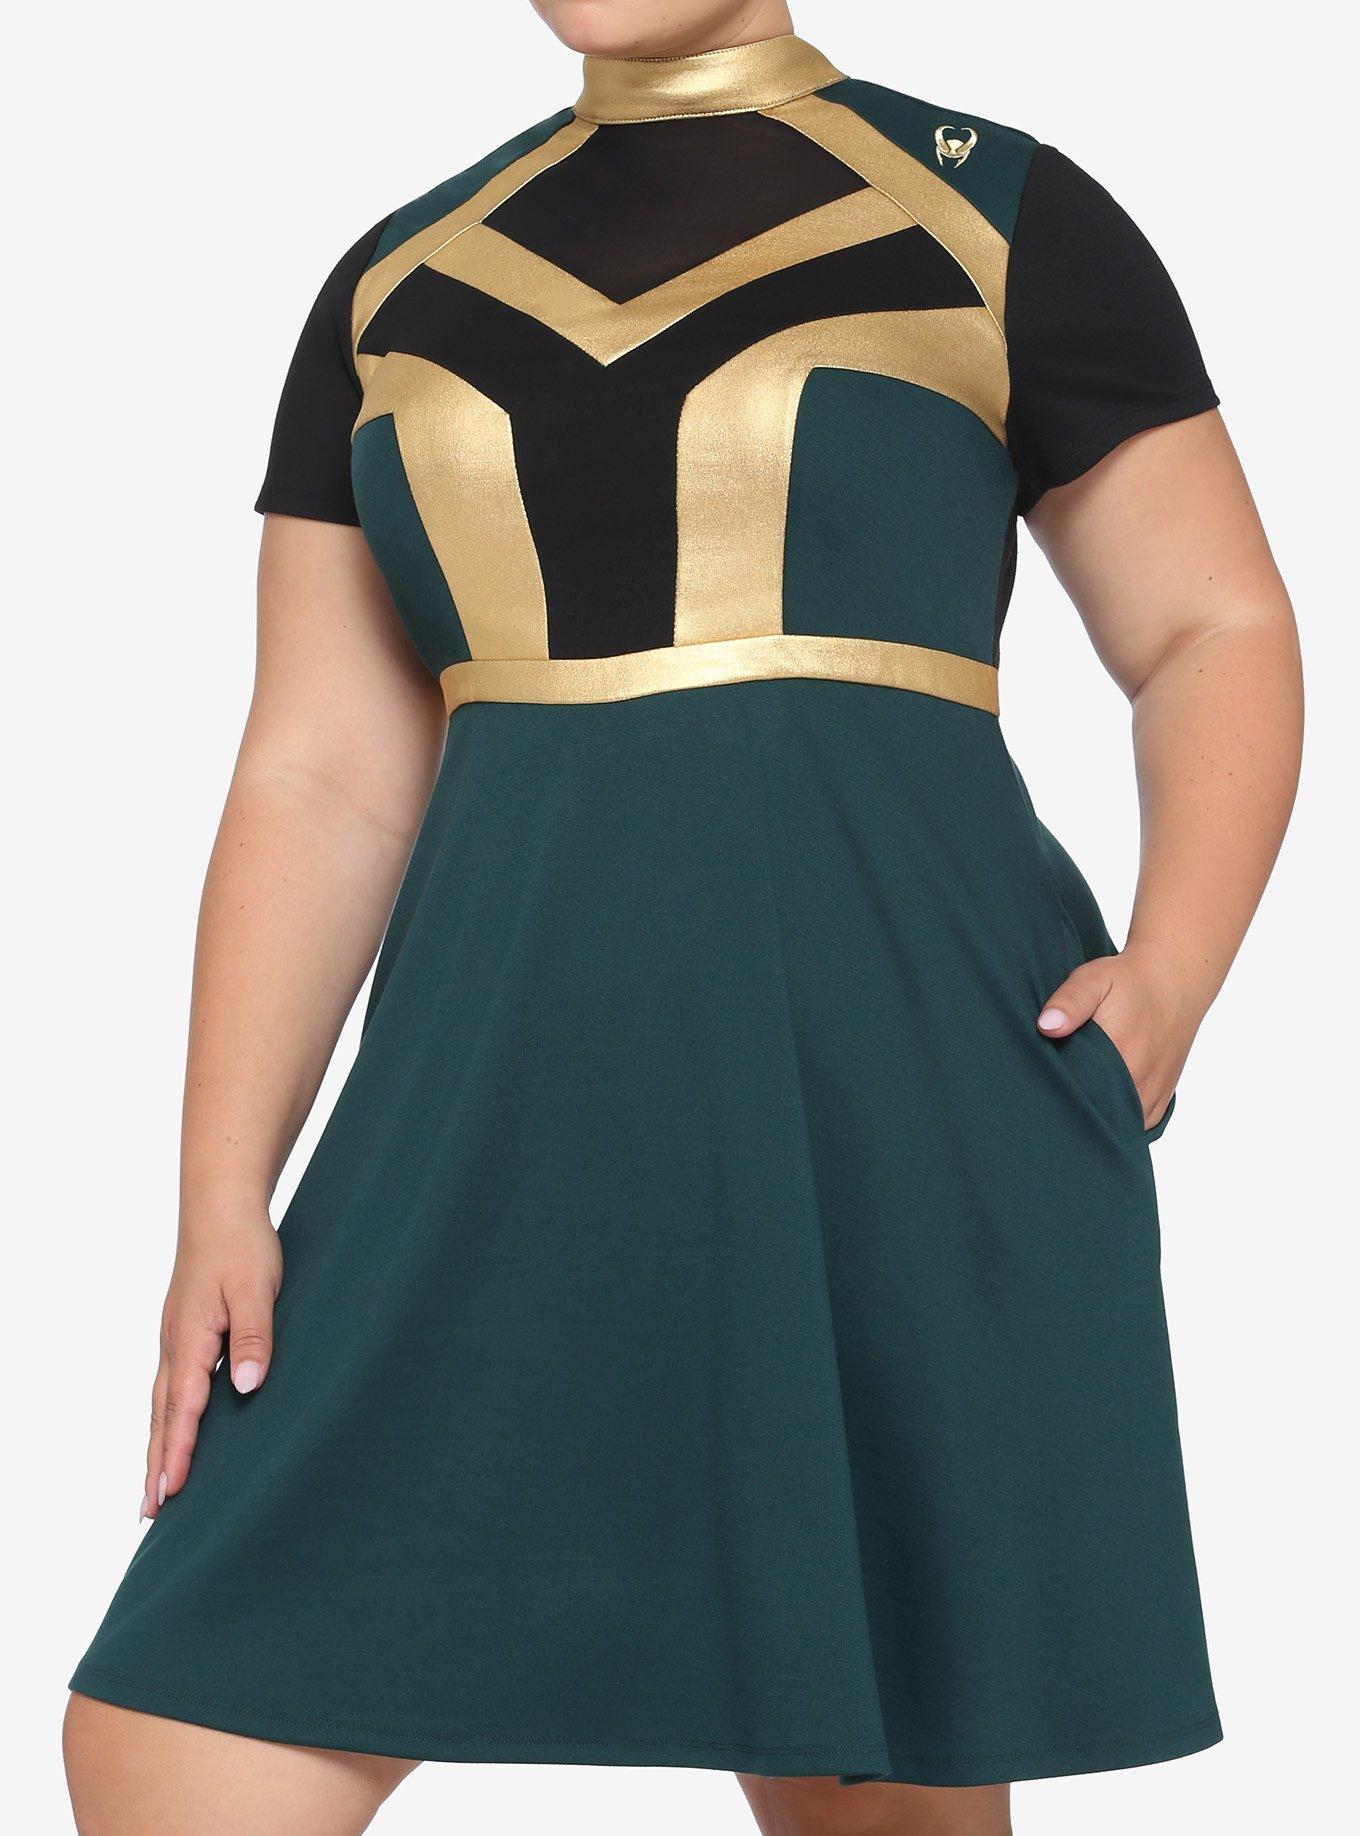 Her Universe Marvel Loki Mock Neck Mesh Inset Panel Dress Plus Size, MULTI, hi-res